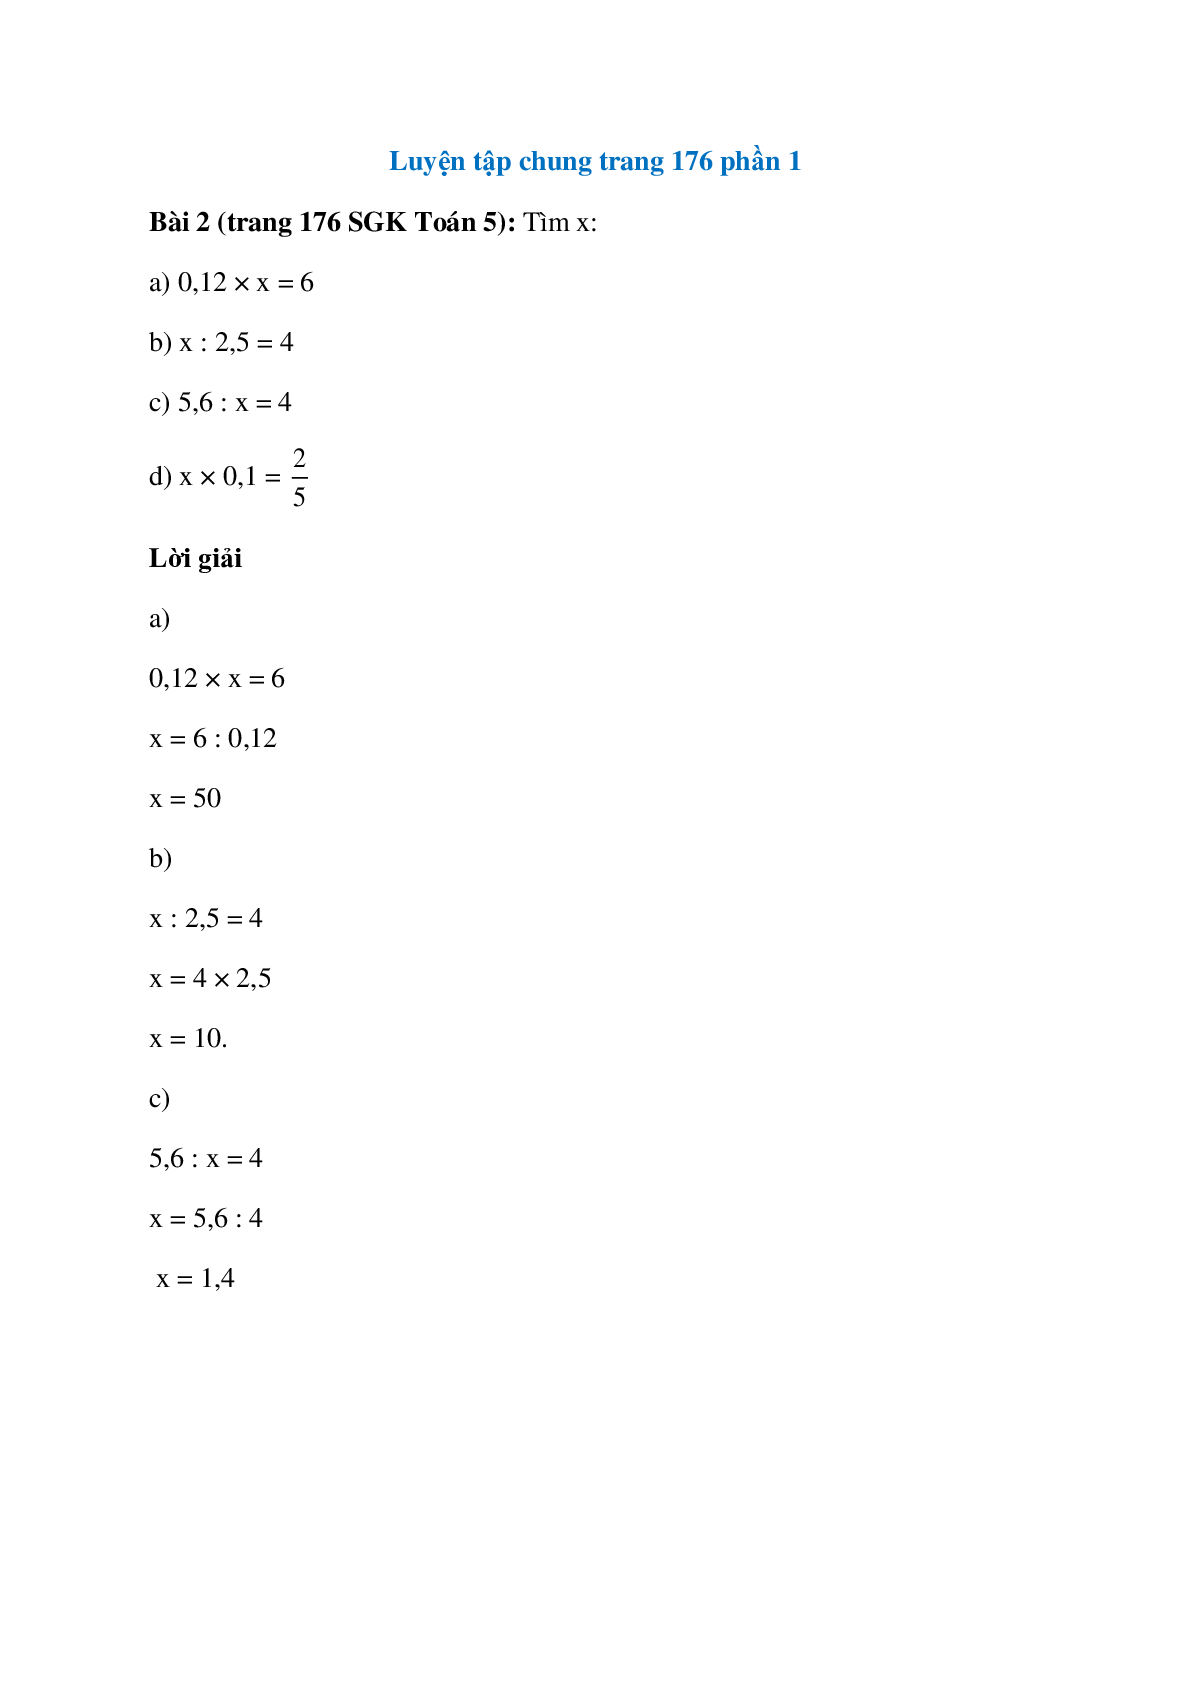 Tìm x: 0,12 × x = 6; x : 2,5 = 4 (trang 1)